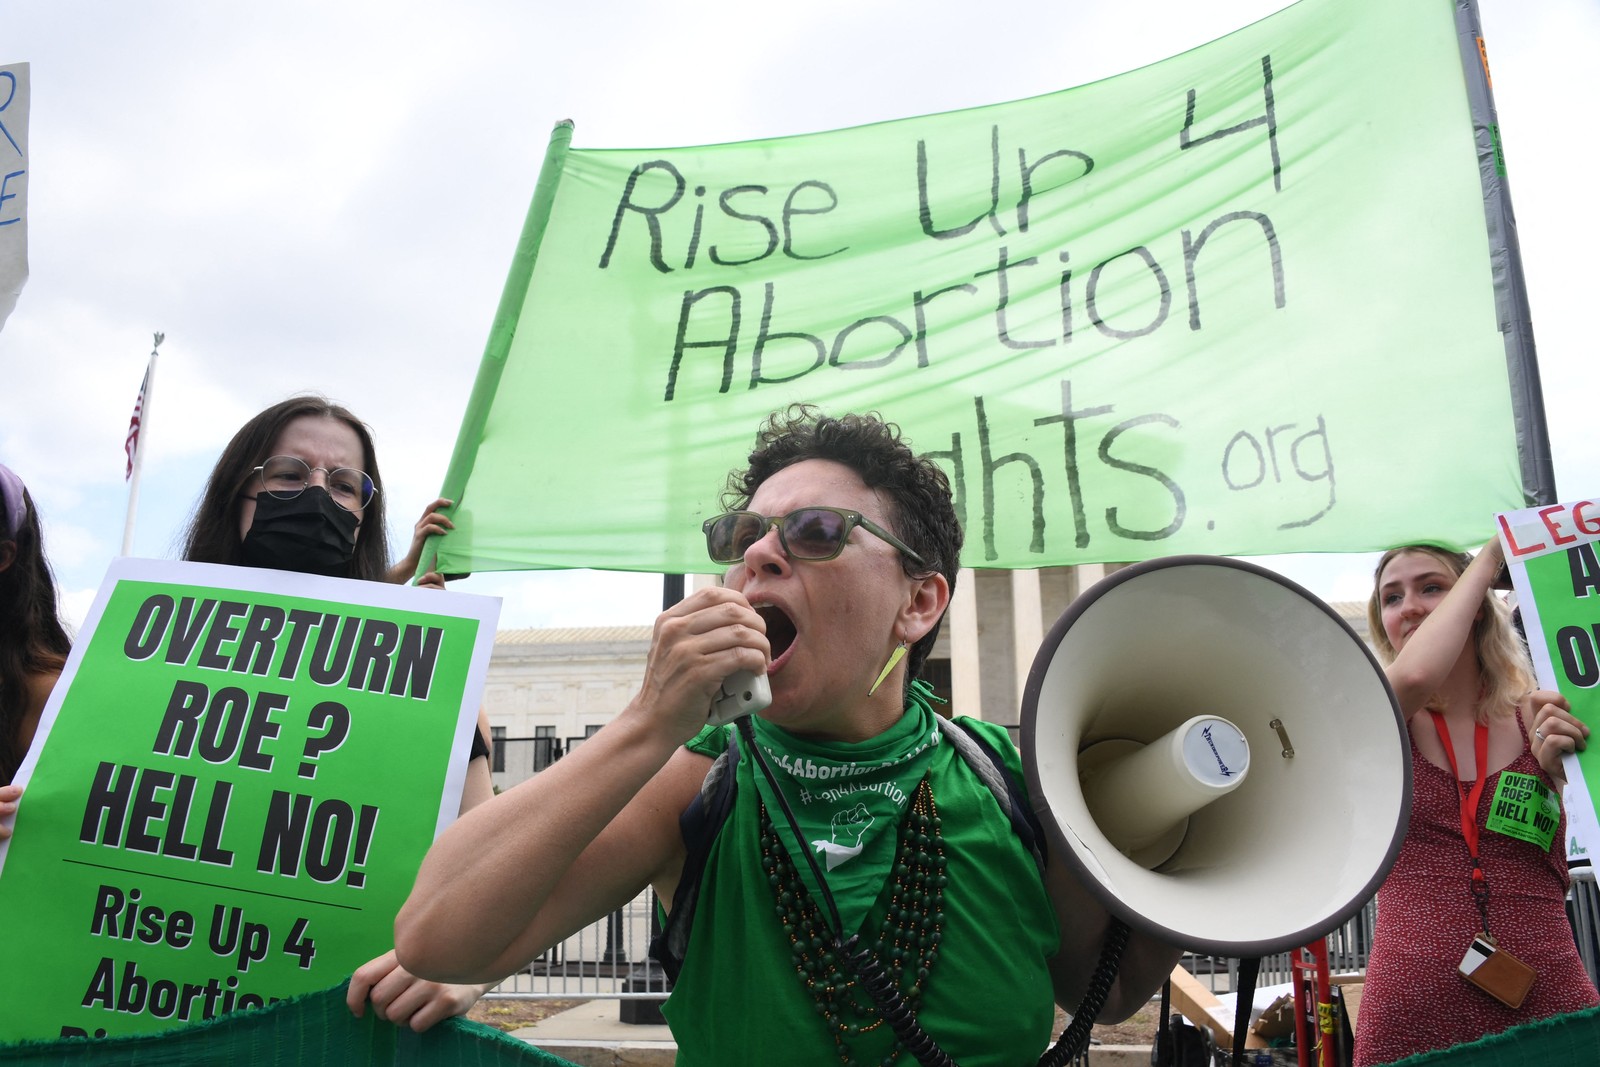 Apoiadores pró-escolha protestam em frente à Suprema Corte dos EUA, em Washington, contra a revogação do direito ao aborto — Foto: OLIVIER DOULIERY / AFP